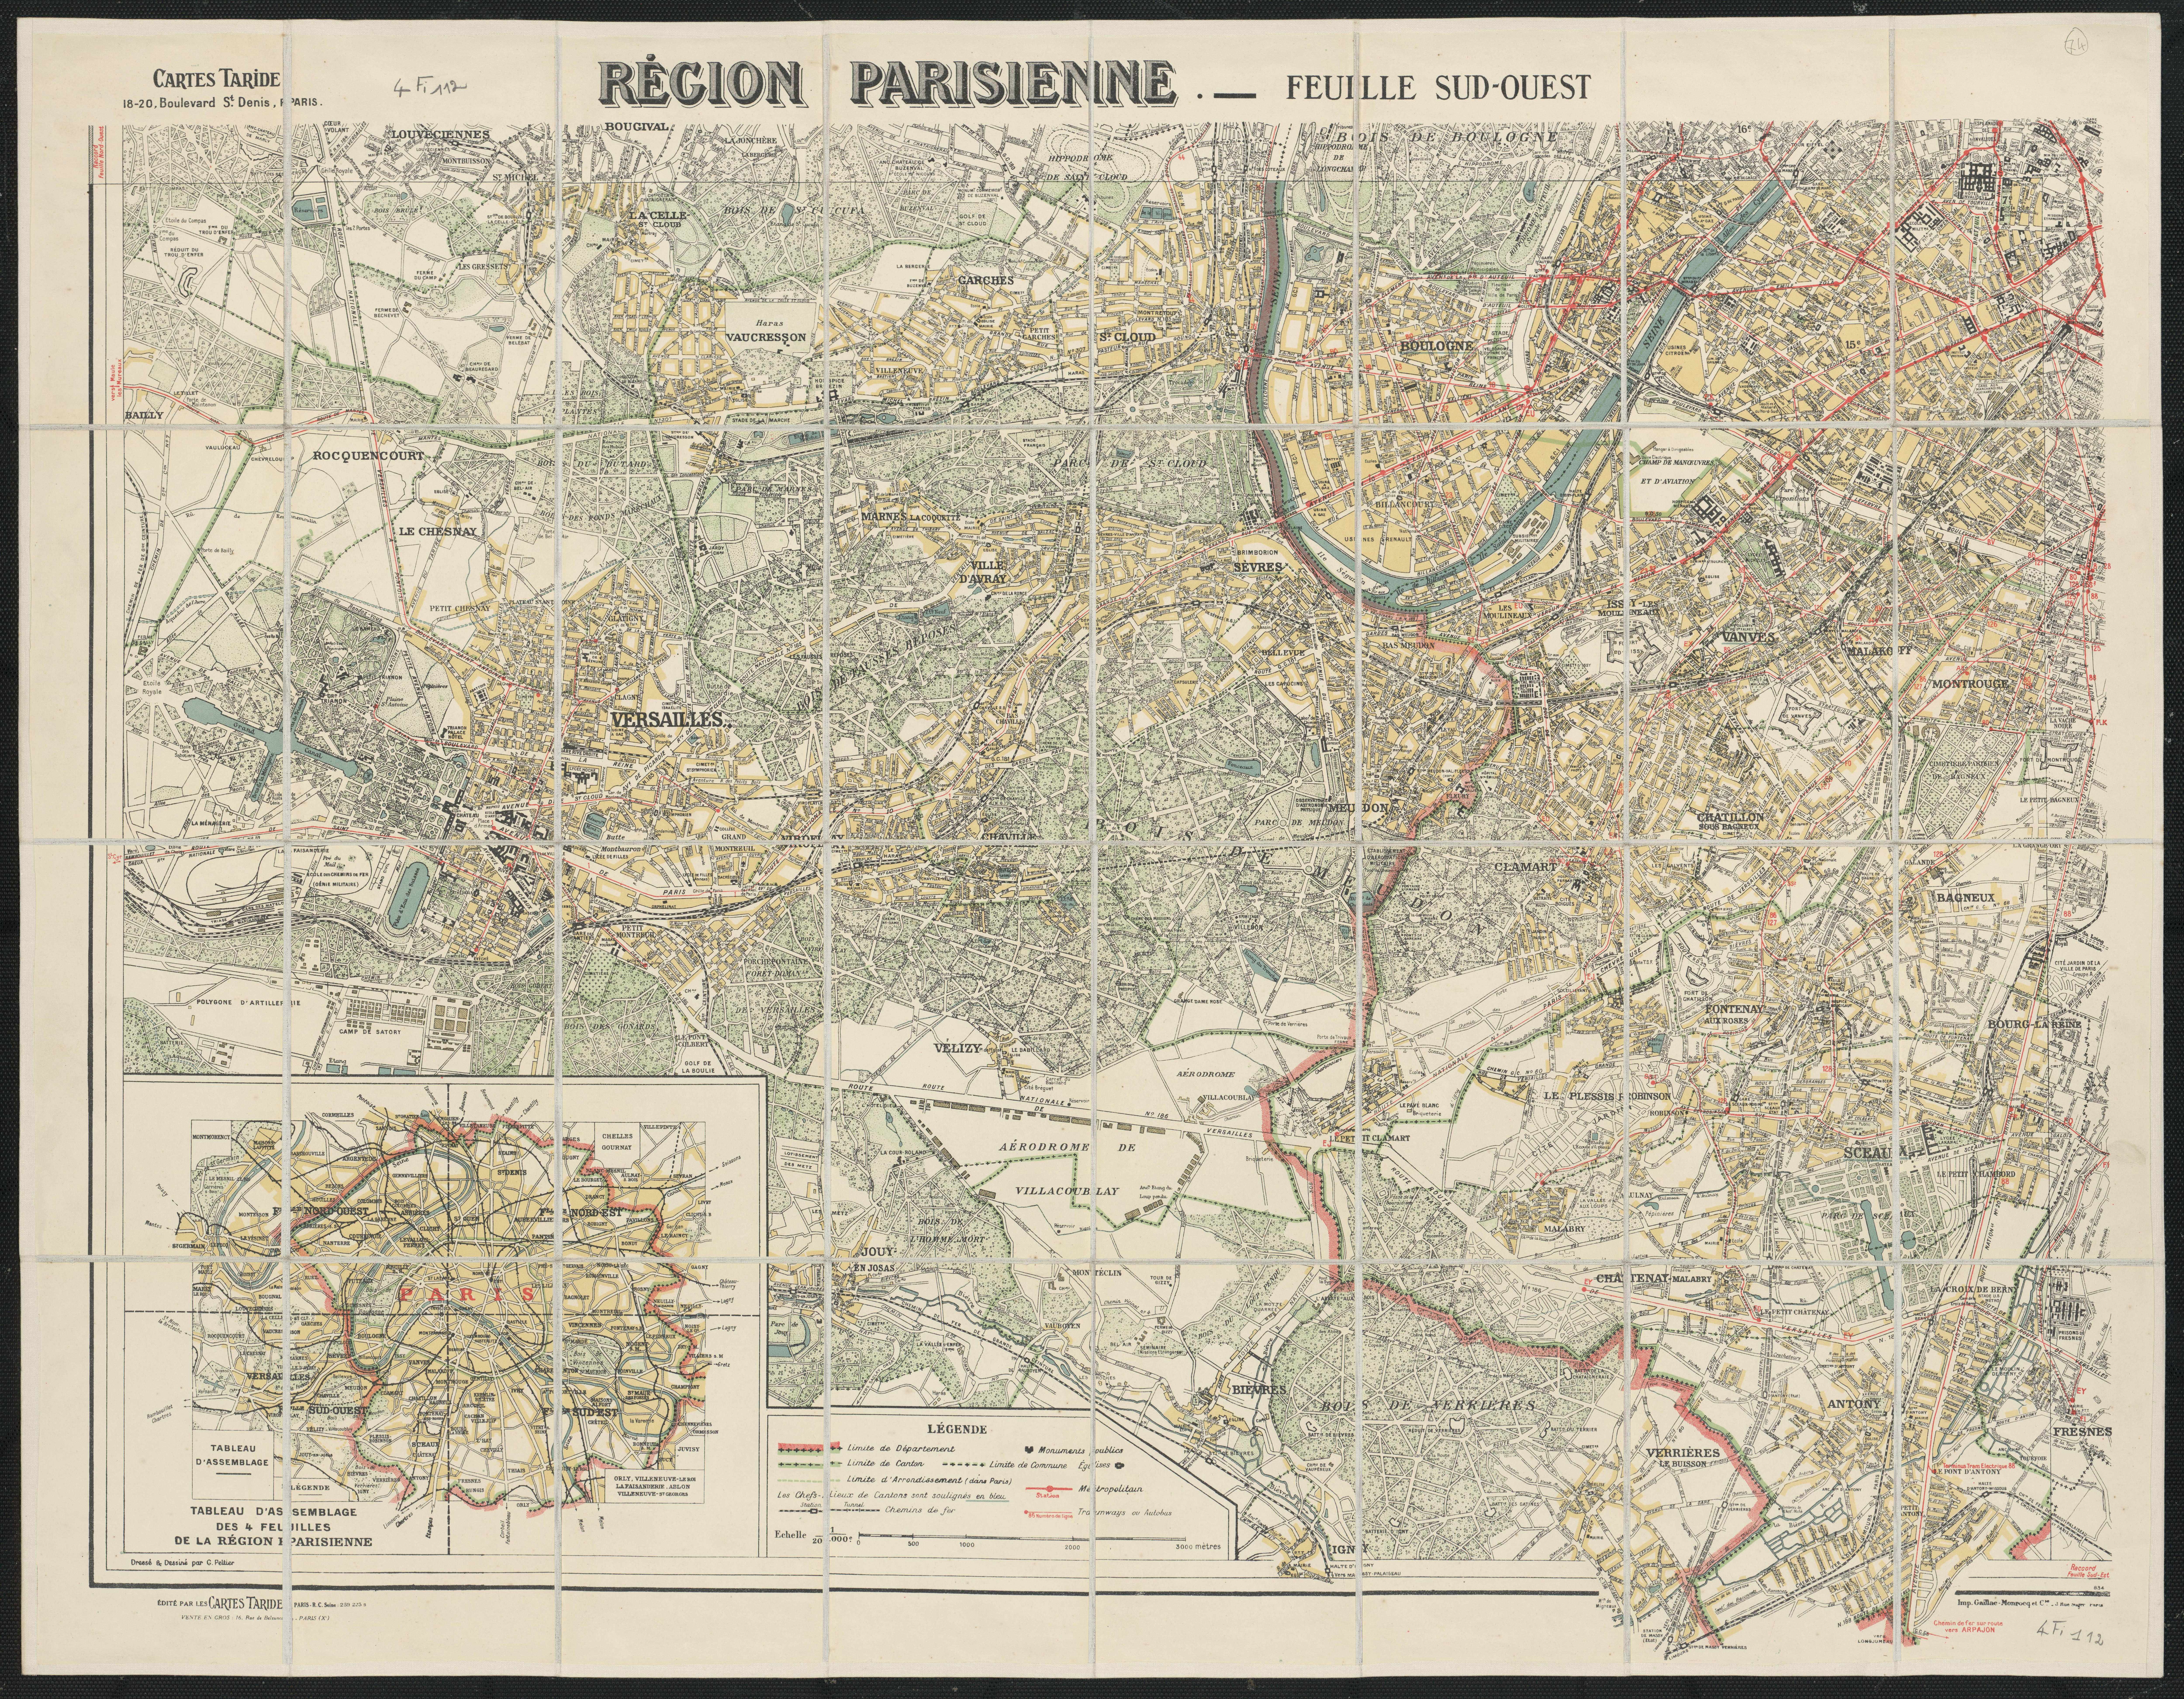 Région parisienne : feuille sud-ouest. 1934.